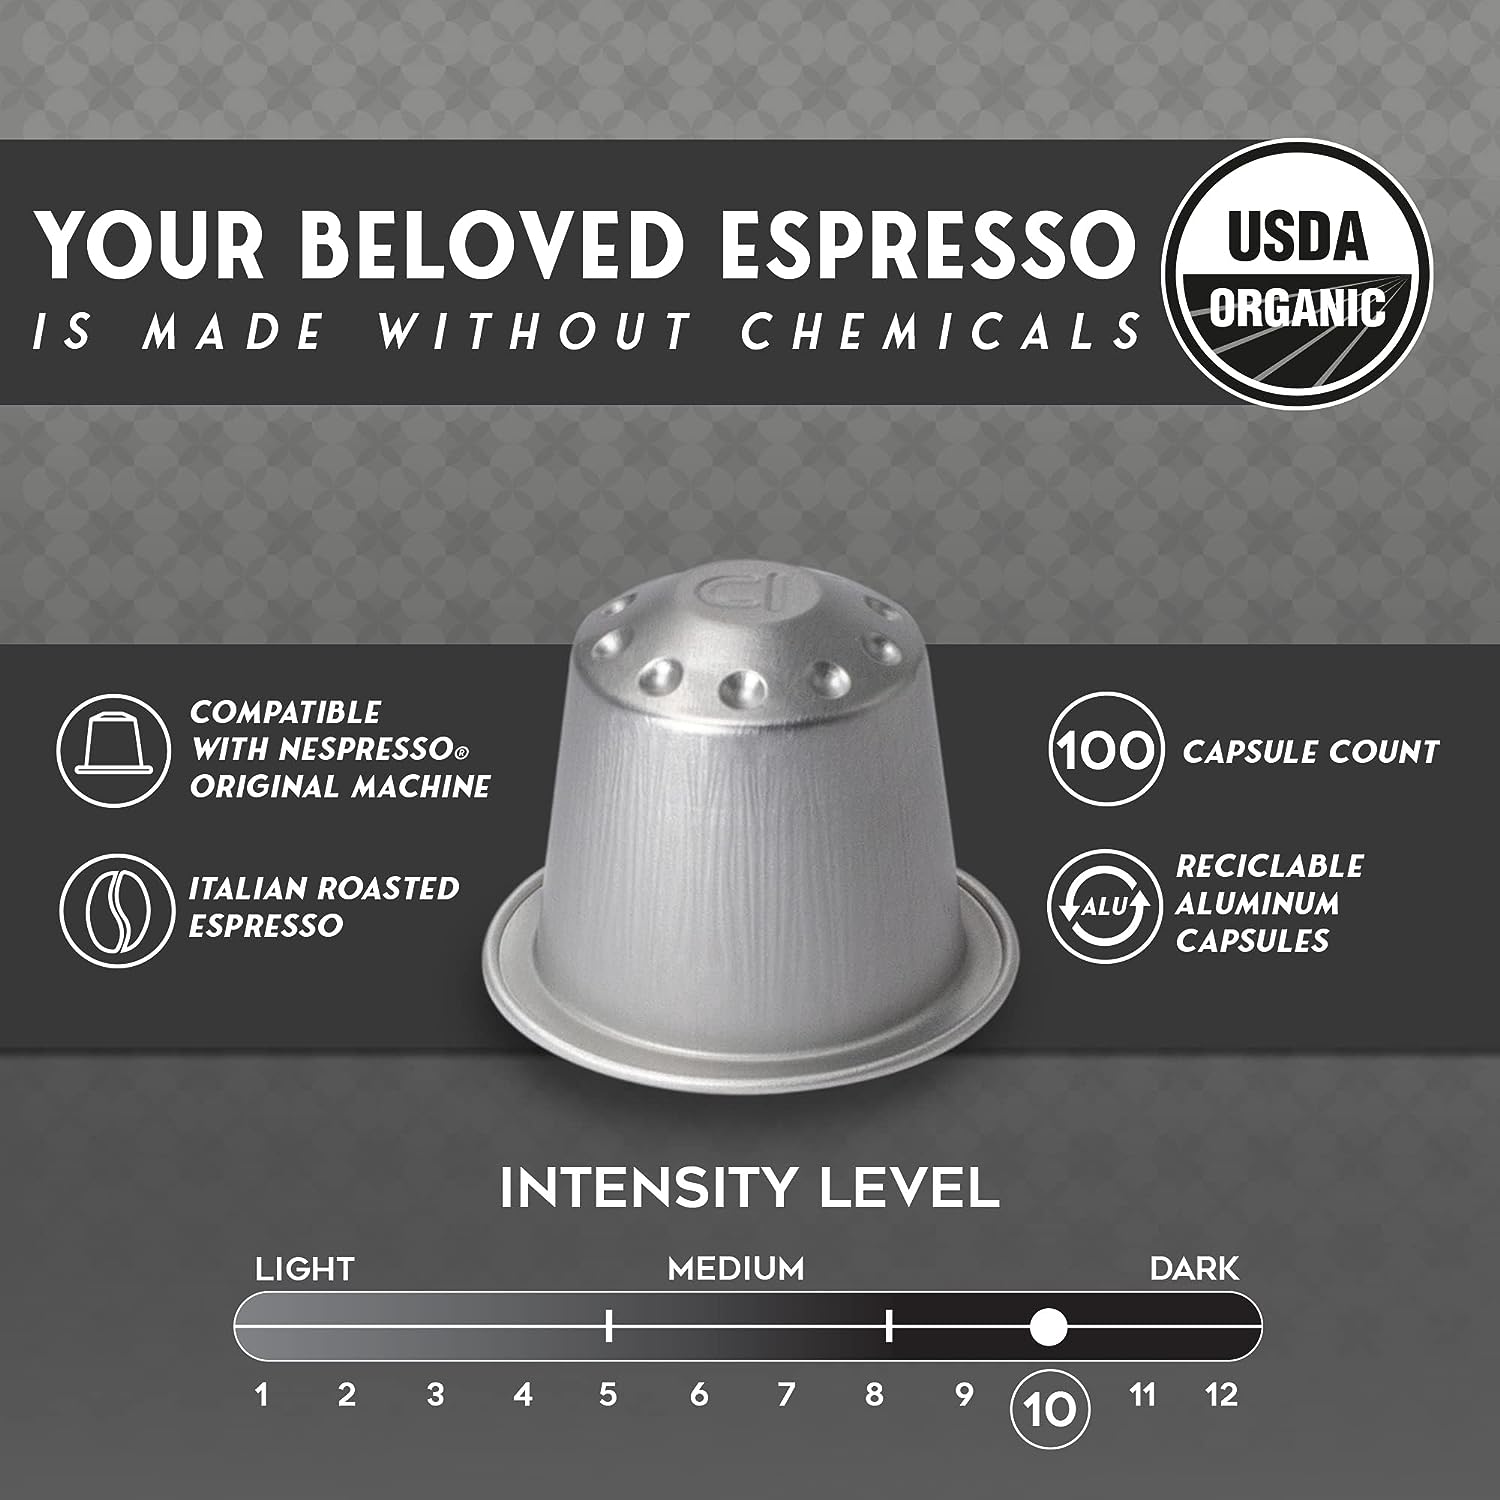 Nespresso Aluminum